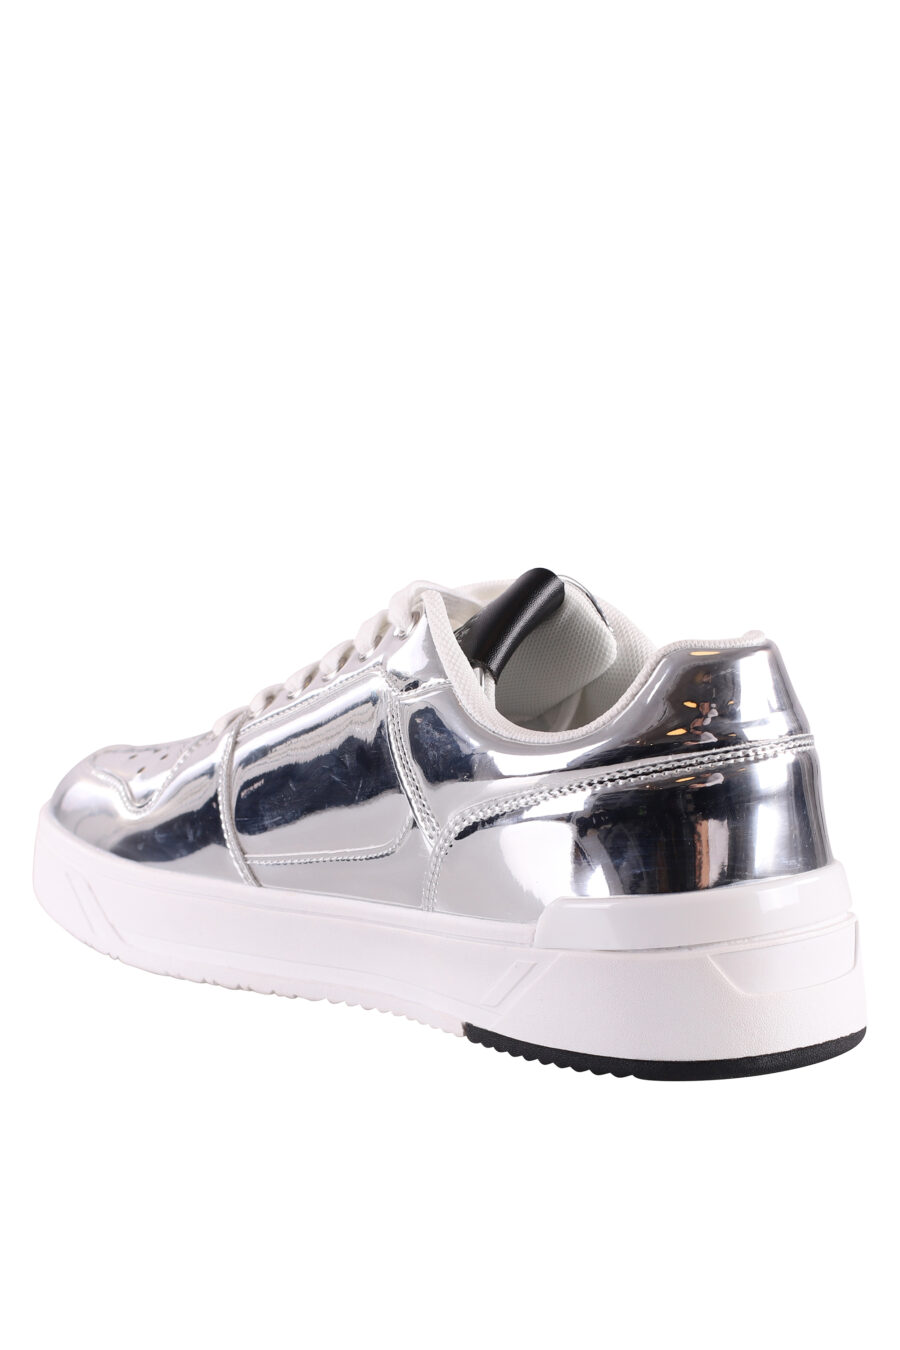 Silberne Schuhe mit Spiegeleffekt und Maxilogo - IMG 8475